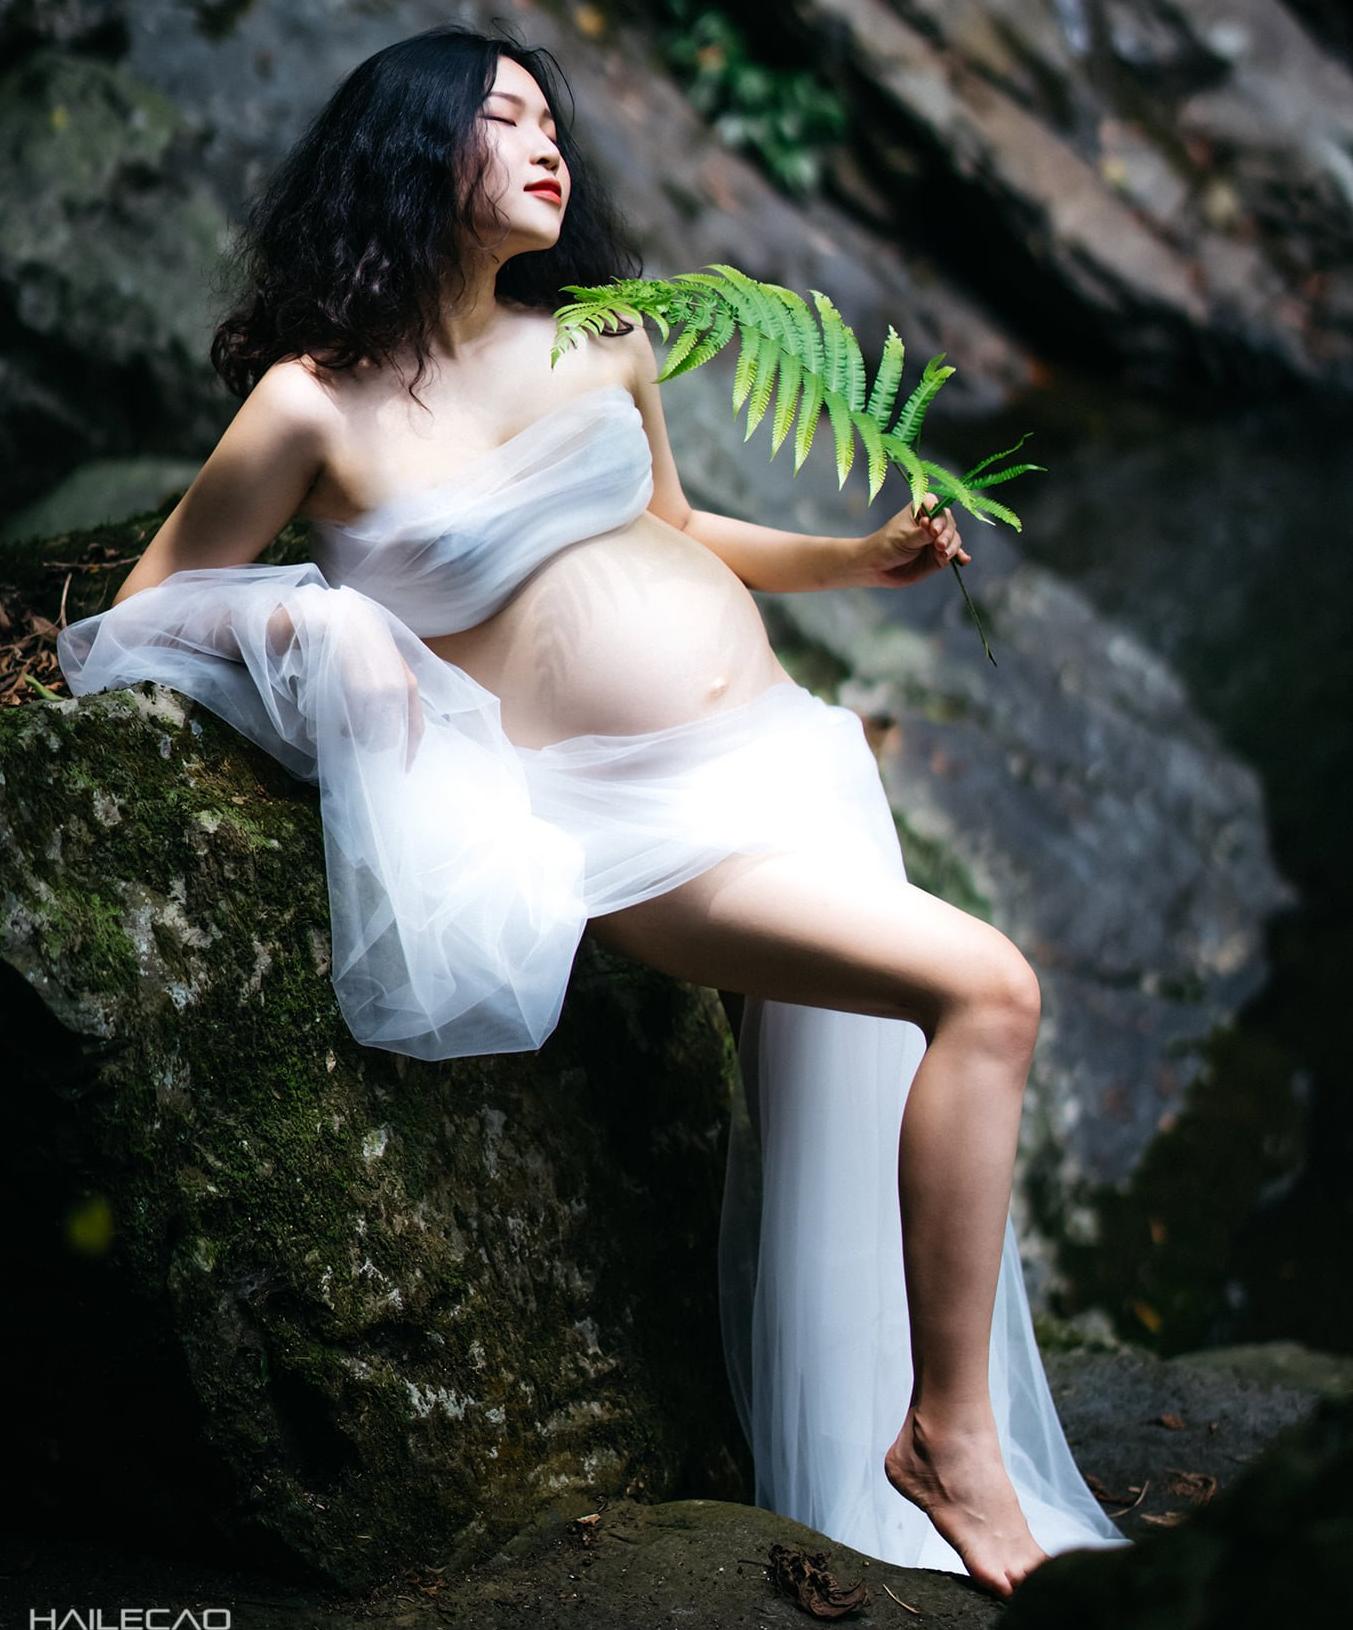 Được chồng ủng hộ, Mỹ Linh vừa được thỏa sức với đam mê vừa có một thai kì khỏe mạnh.